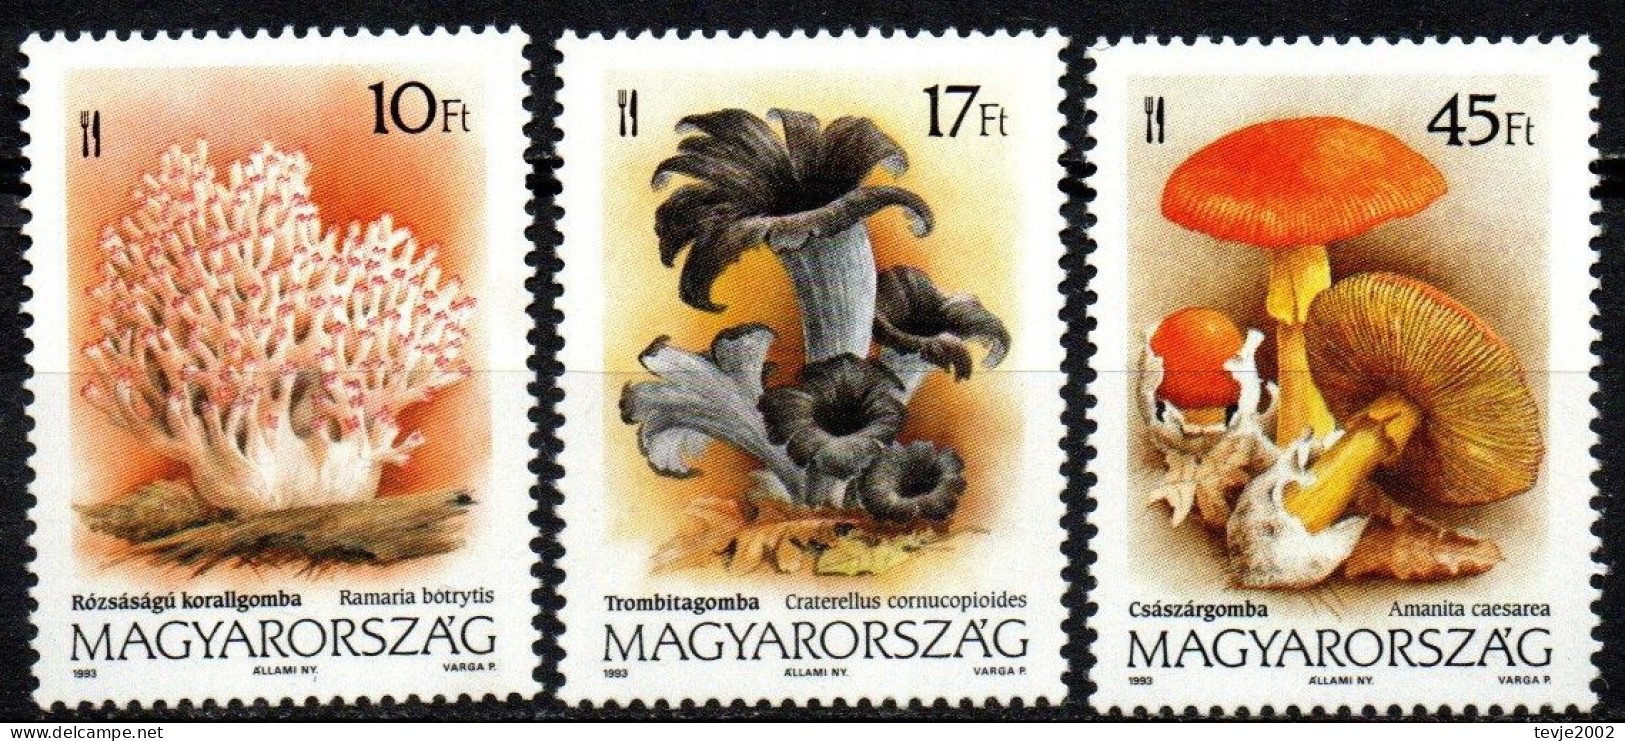 Ungarn 1993 - Mi.Nr. 4247 - 4249 - Postfrisch MNH - Pilze Mushrooms - Pilze